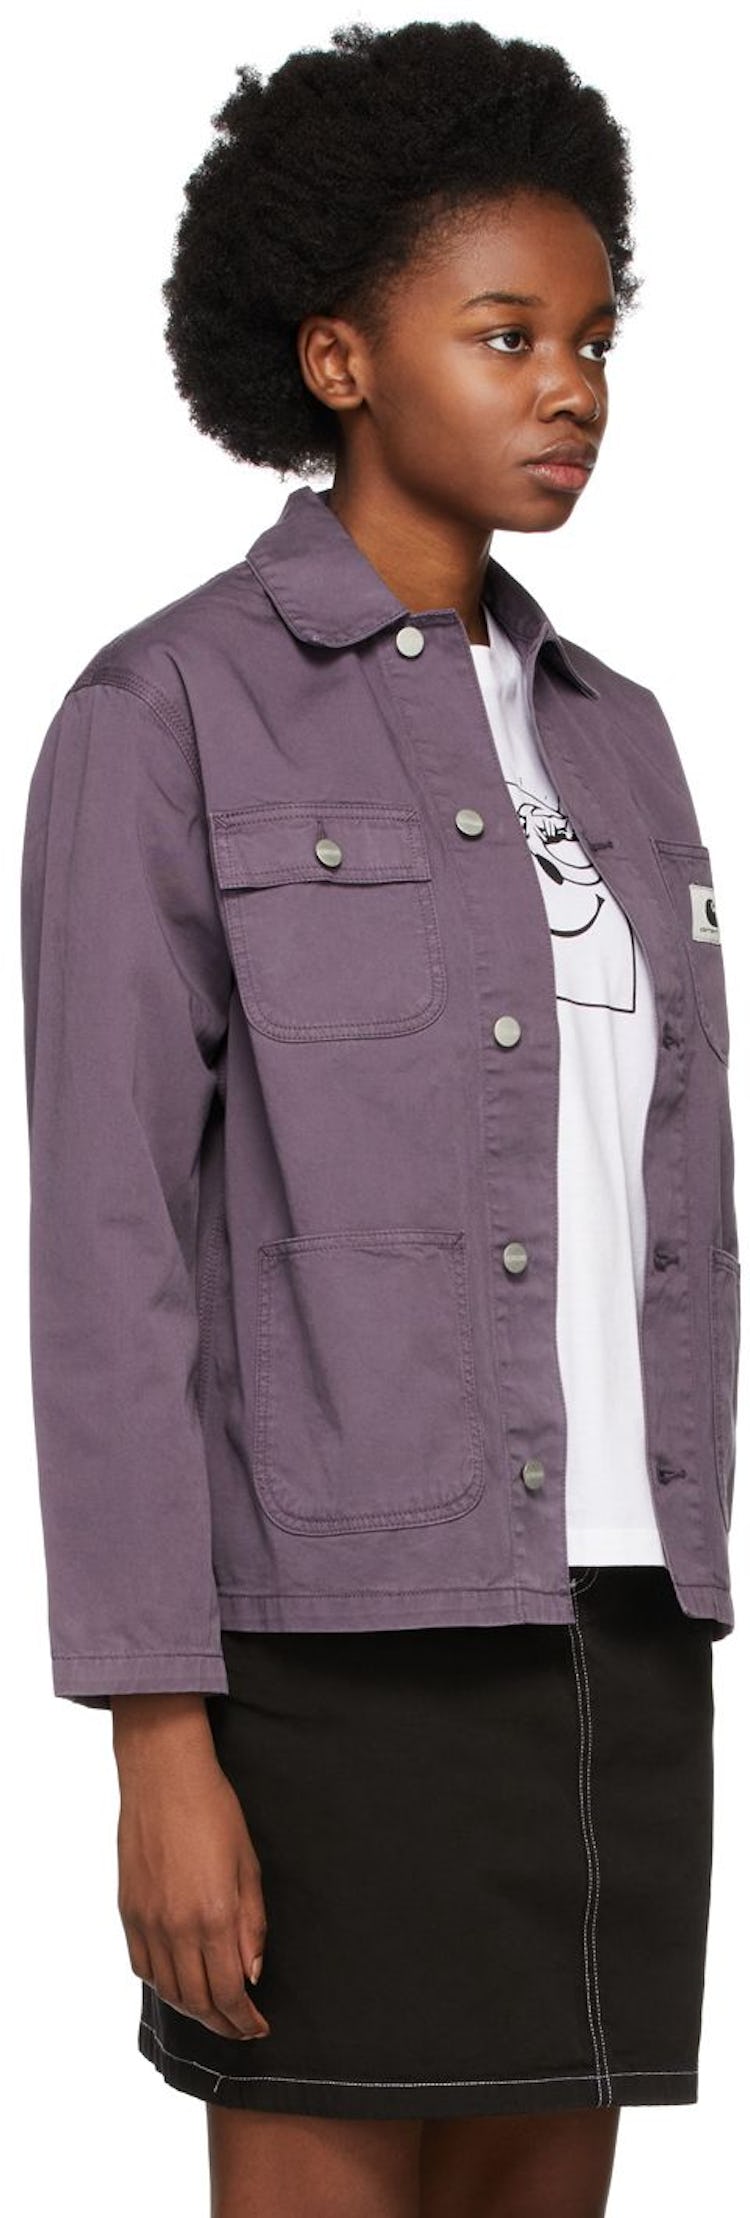 Purple Michigan Jacket: additional image